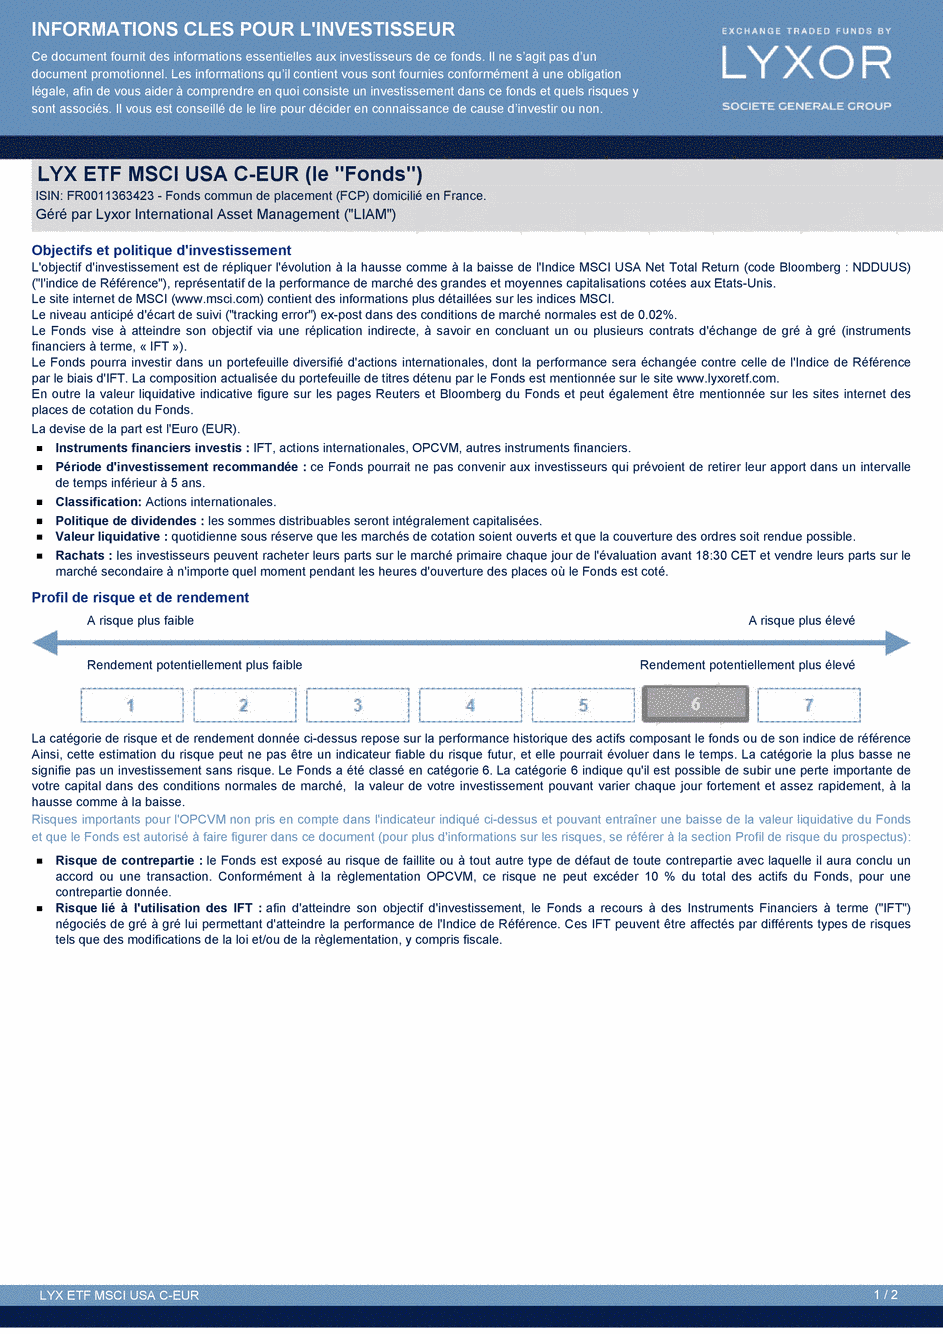 DICI Lyxor MSCI USA UCITS ETF - Acc - 27/04/2015 - Français